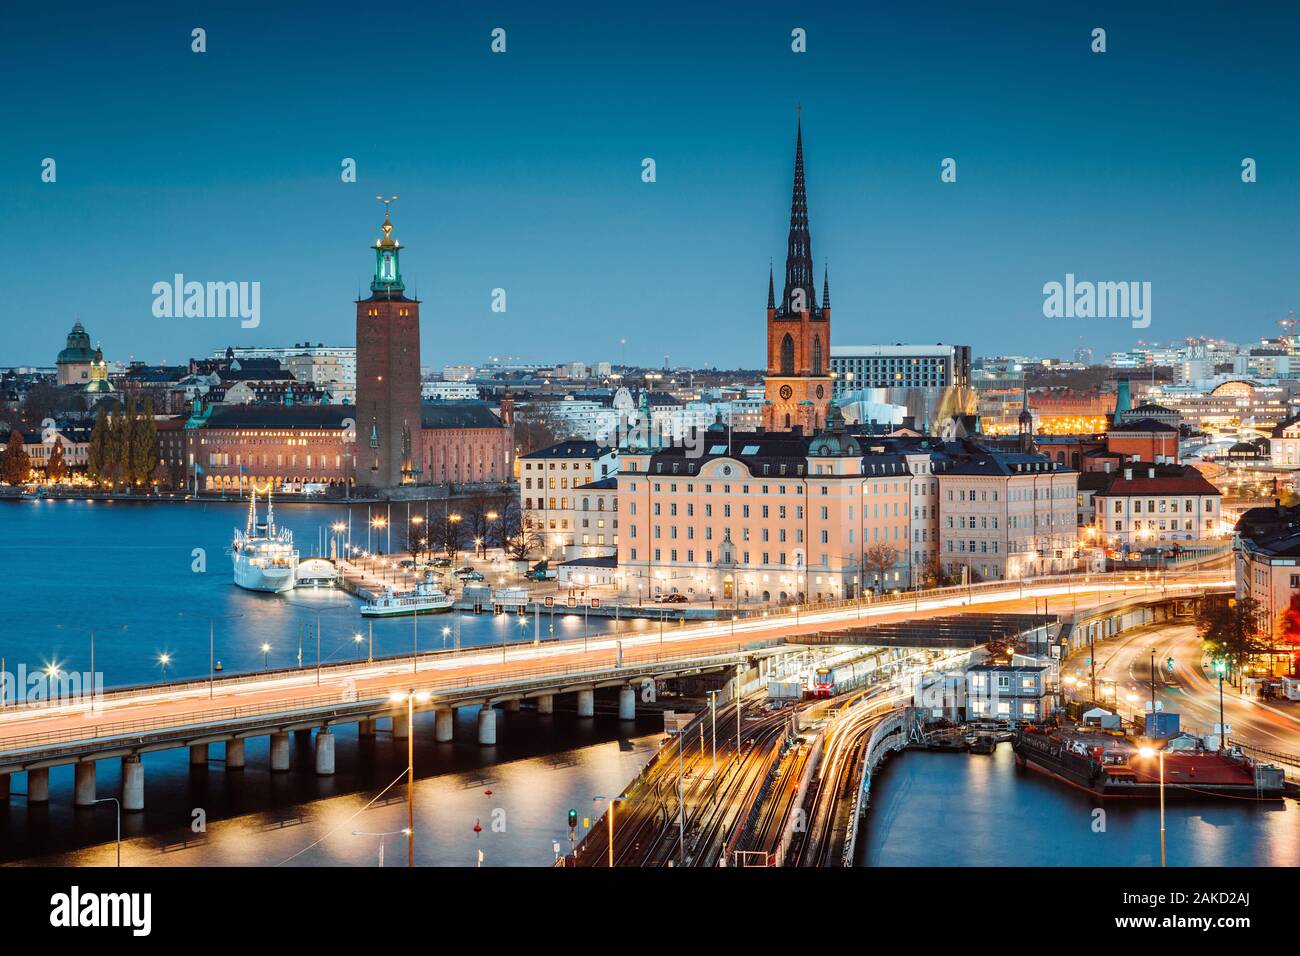 Vista panoramica del centro di Stoccolma con il famoso in Riddarholmen Gamla Stan in bella twilight, Sodermalm, centrale di Stoccolma, Svezia Foto Stock